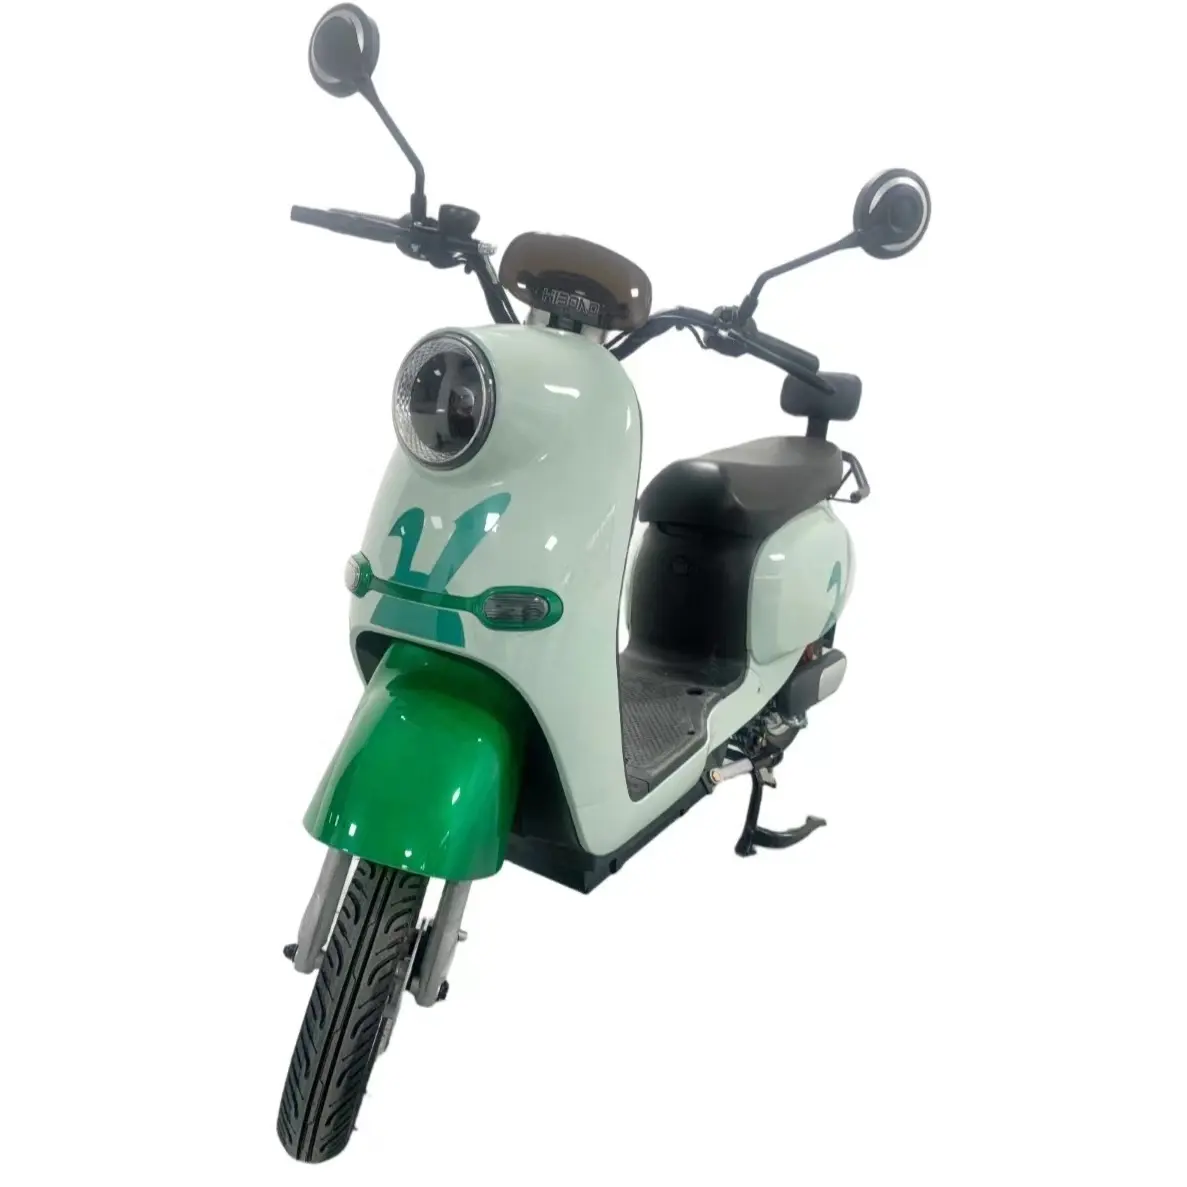 Yeni renkli tasarım modeli kalkan Ev motosiklet Motor döngüsü elektrikli motosiklet satılık